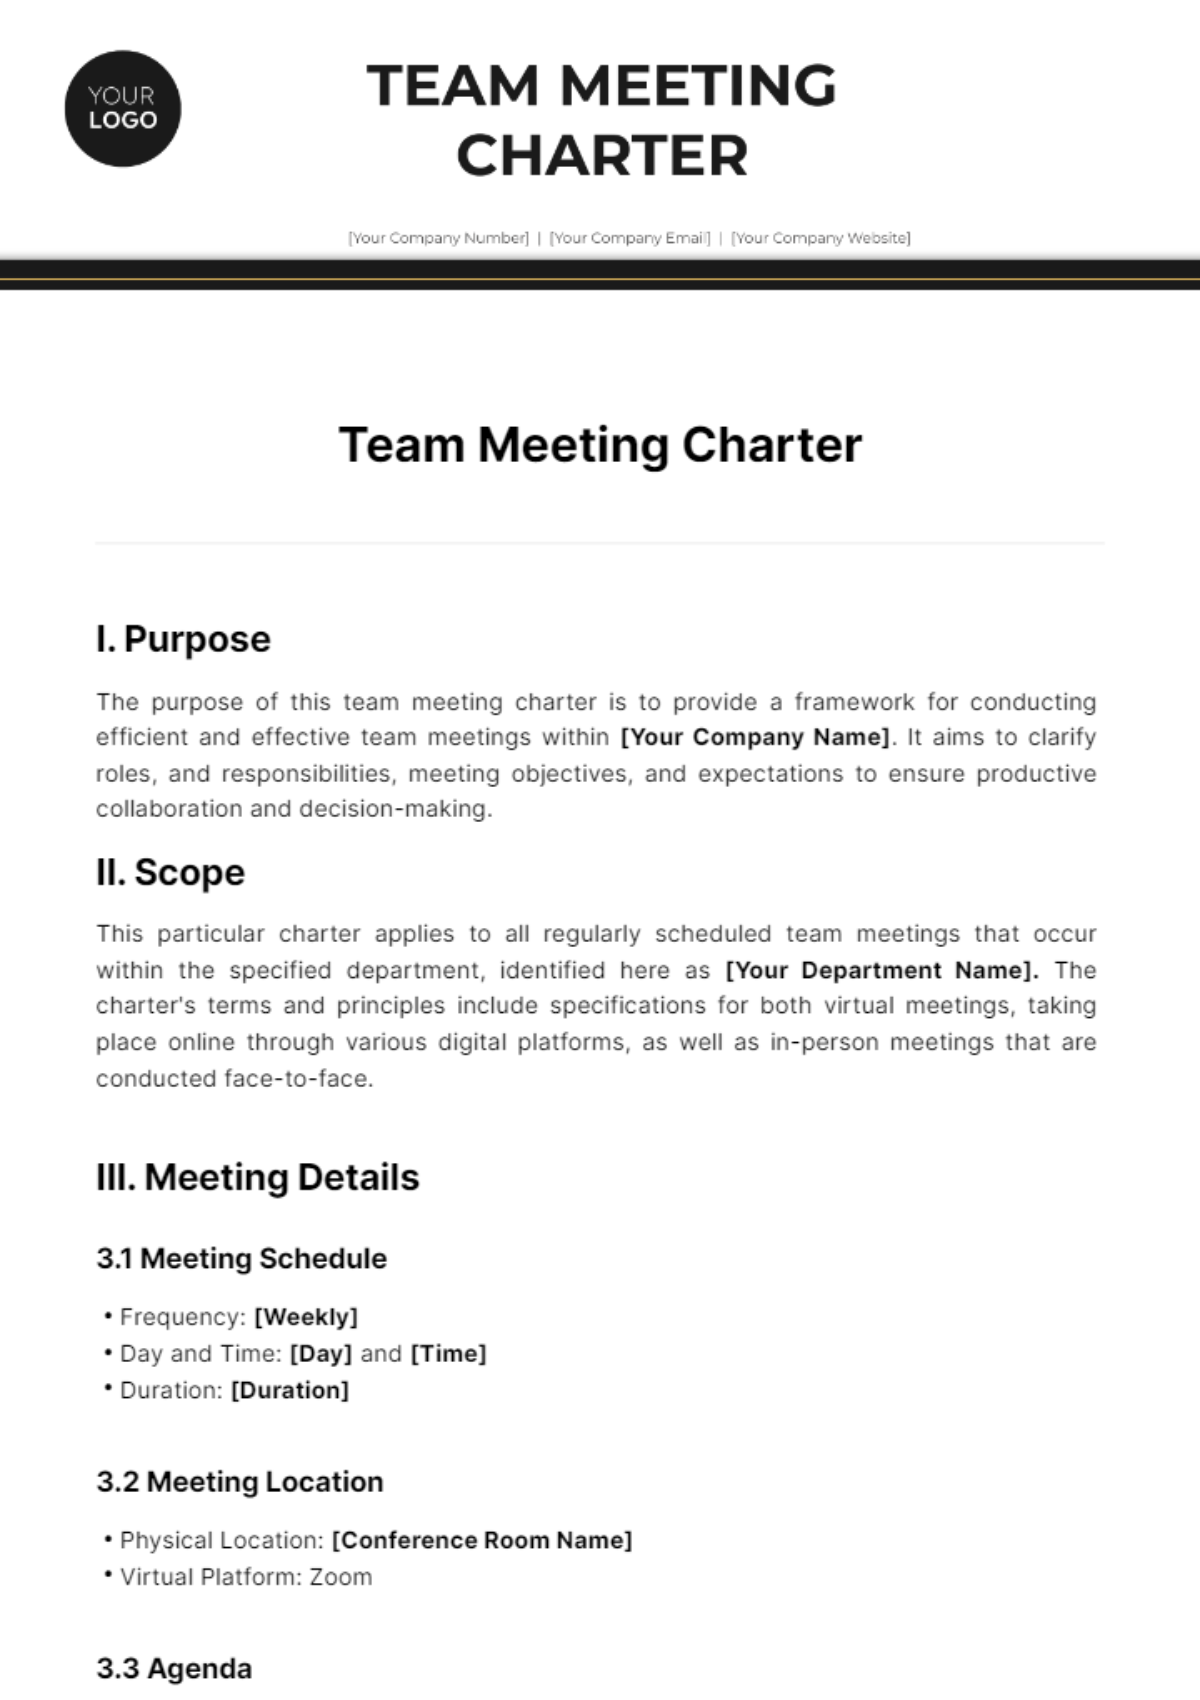 Team Meeting Charter Template